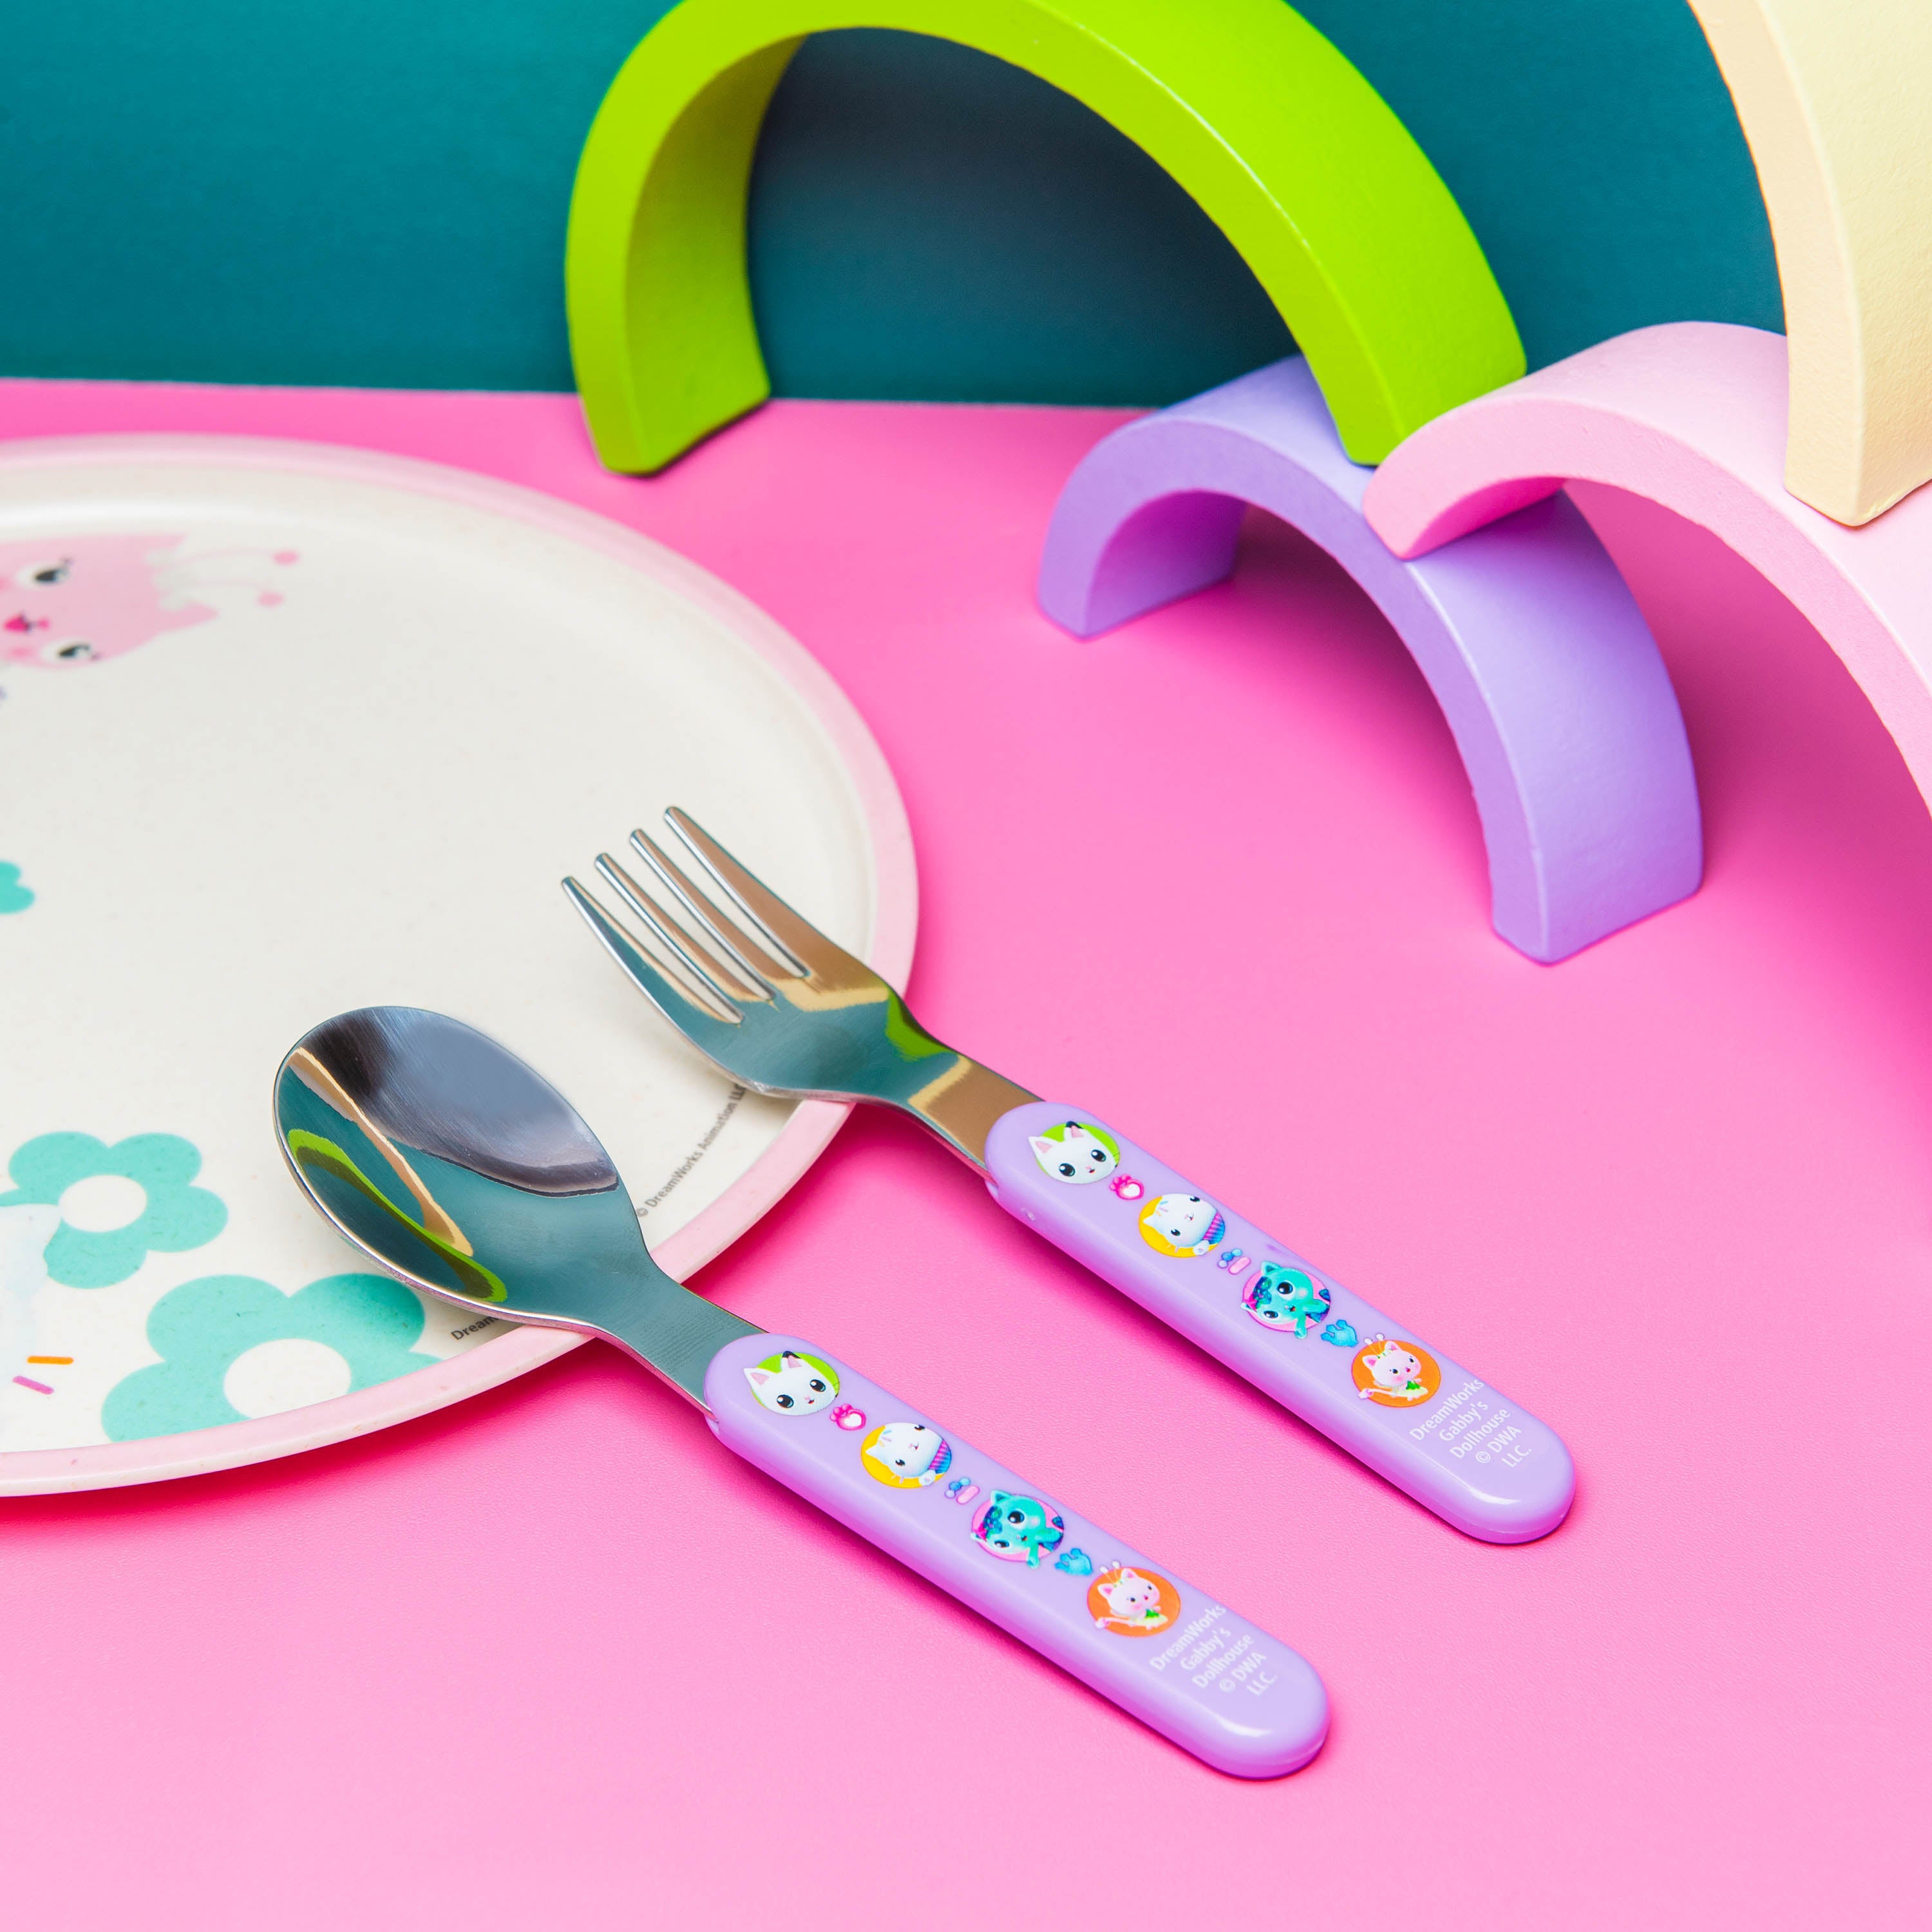 Paw Patrol Boy Children's Kids 3pcs Cutlery Set - Knife/Fork/Spoon